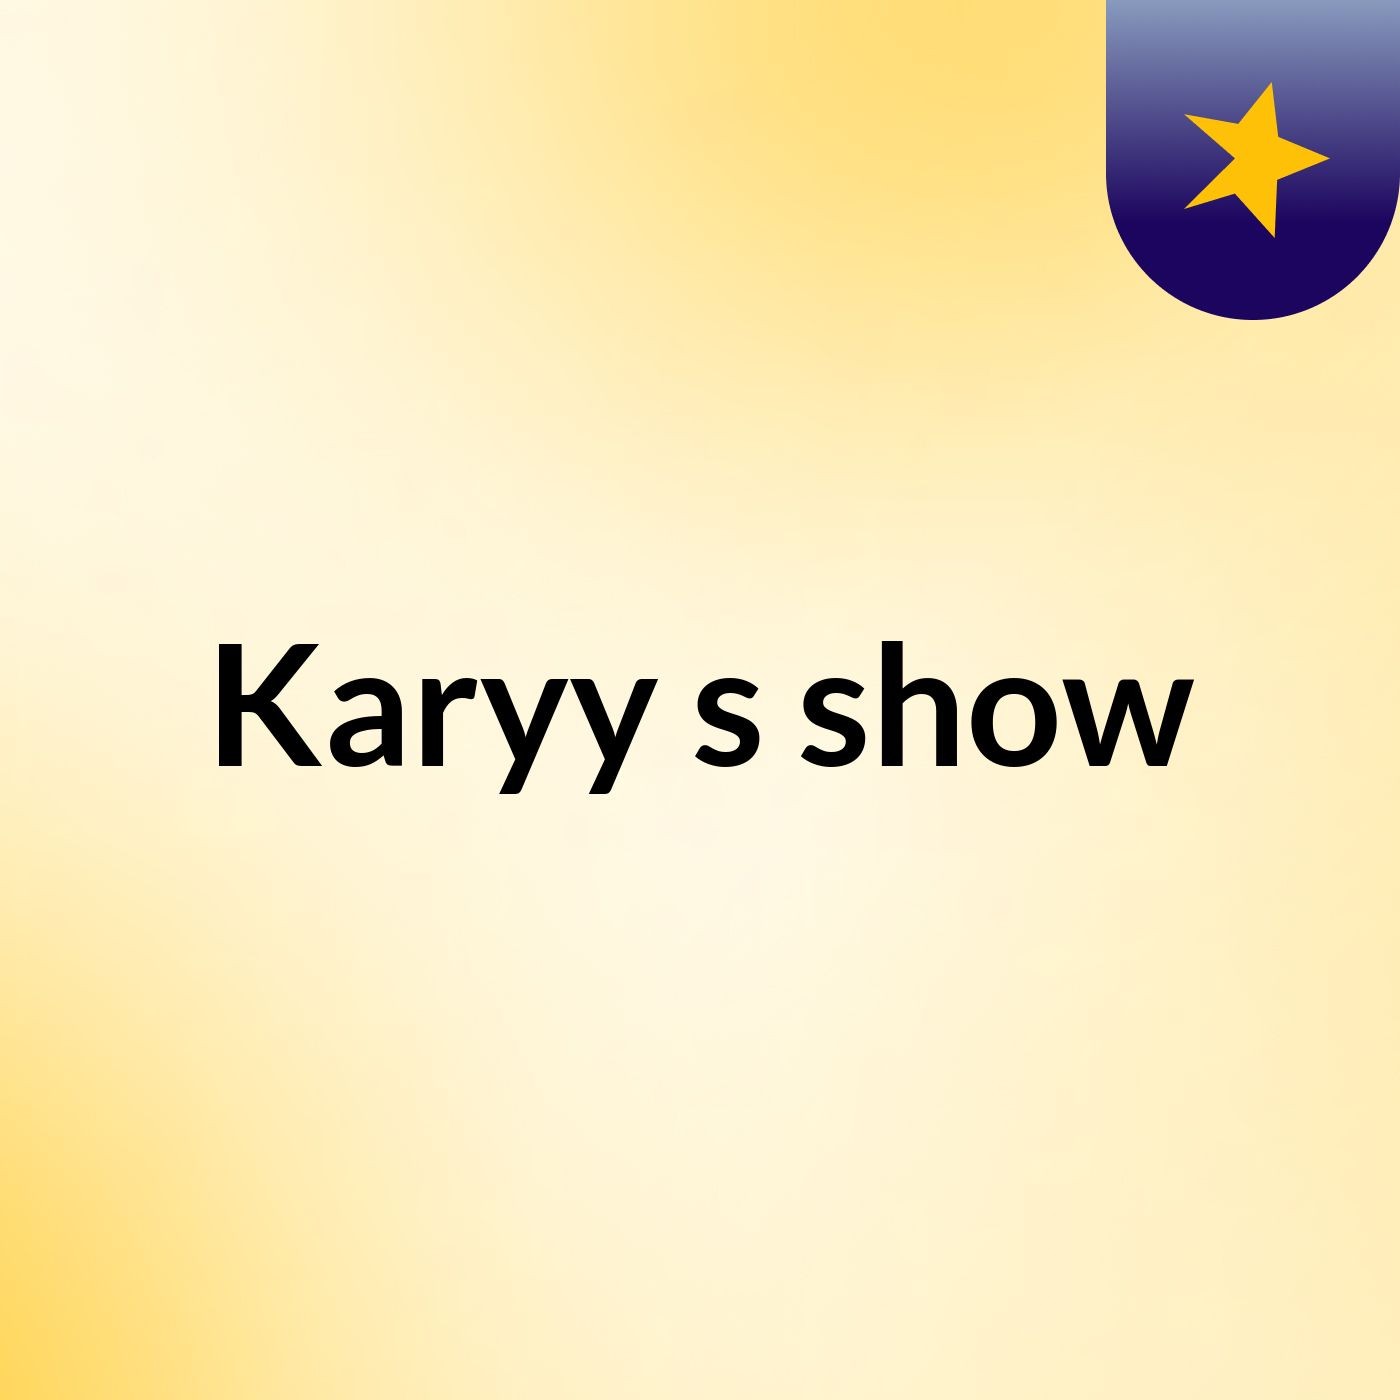 Karyy's show